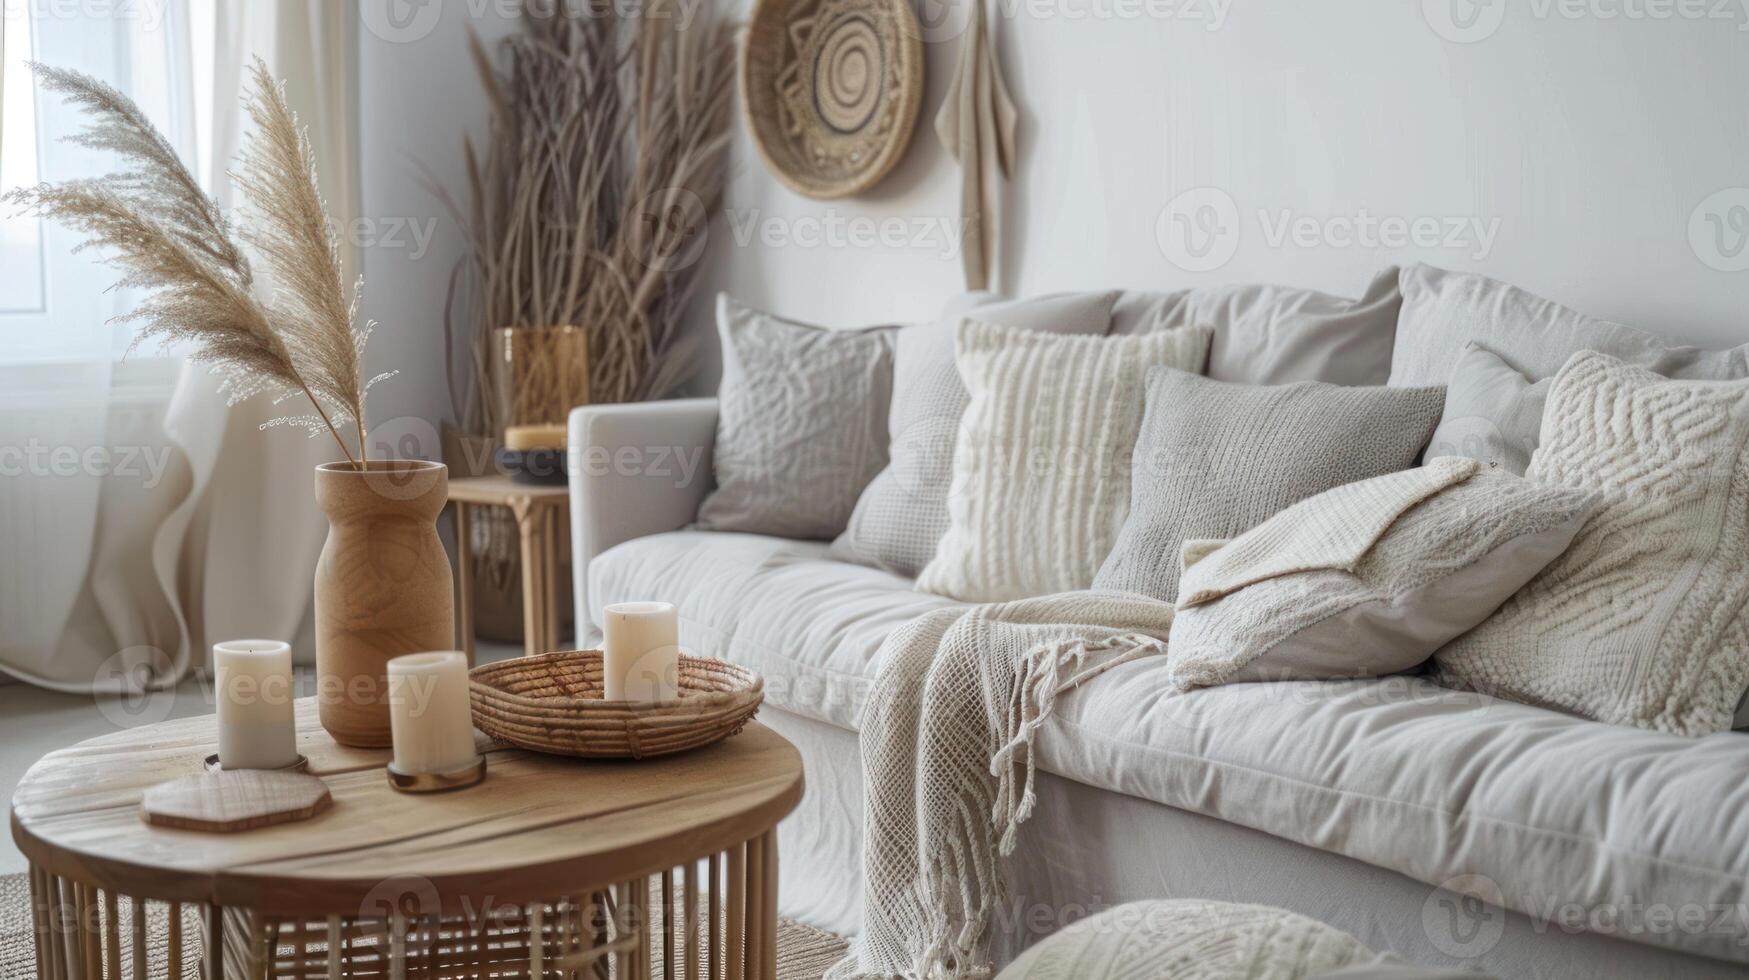 escandinavo casa interior do moderno vivo quarto com mobília e acessível trabalhos manuais foto